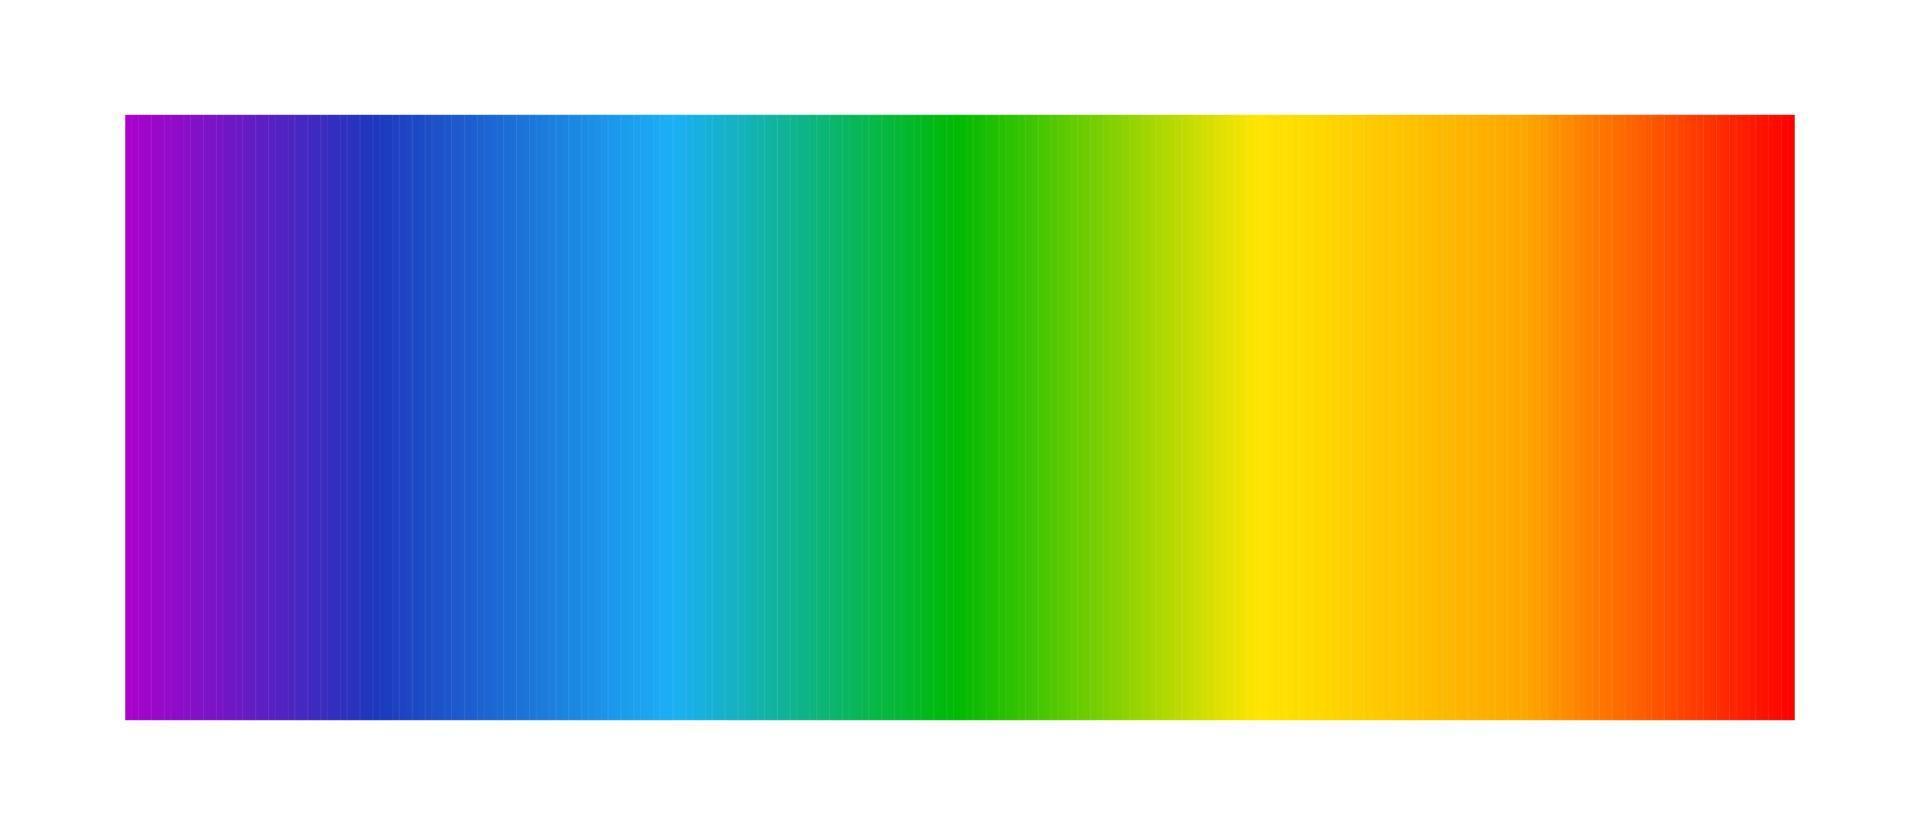 optisch lichtspectrum. regenboog gradiënt achtergrond. elektromagnetisch zichtbaar kleurenspectrum voor het menselijk oog. kleurenschema van infrarood tot ultraviolet. vectorillustratie geïsoleerd op een witte achtergrond vector